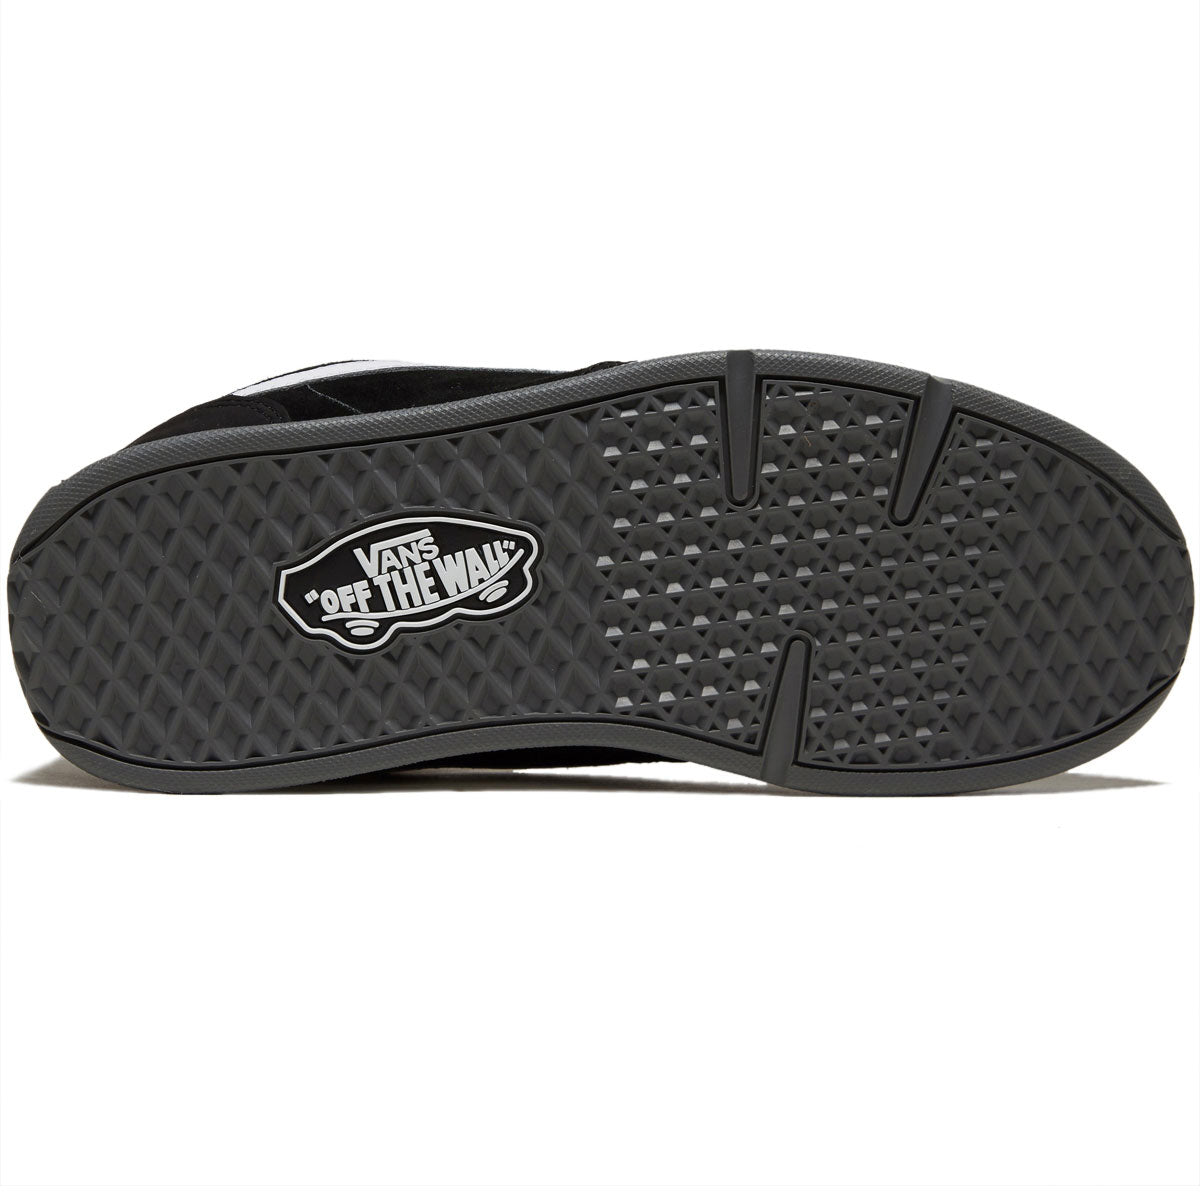 Vans Rowley XLT Shoes - Black/White image 4